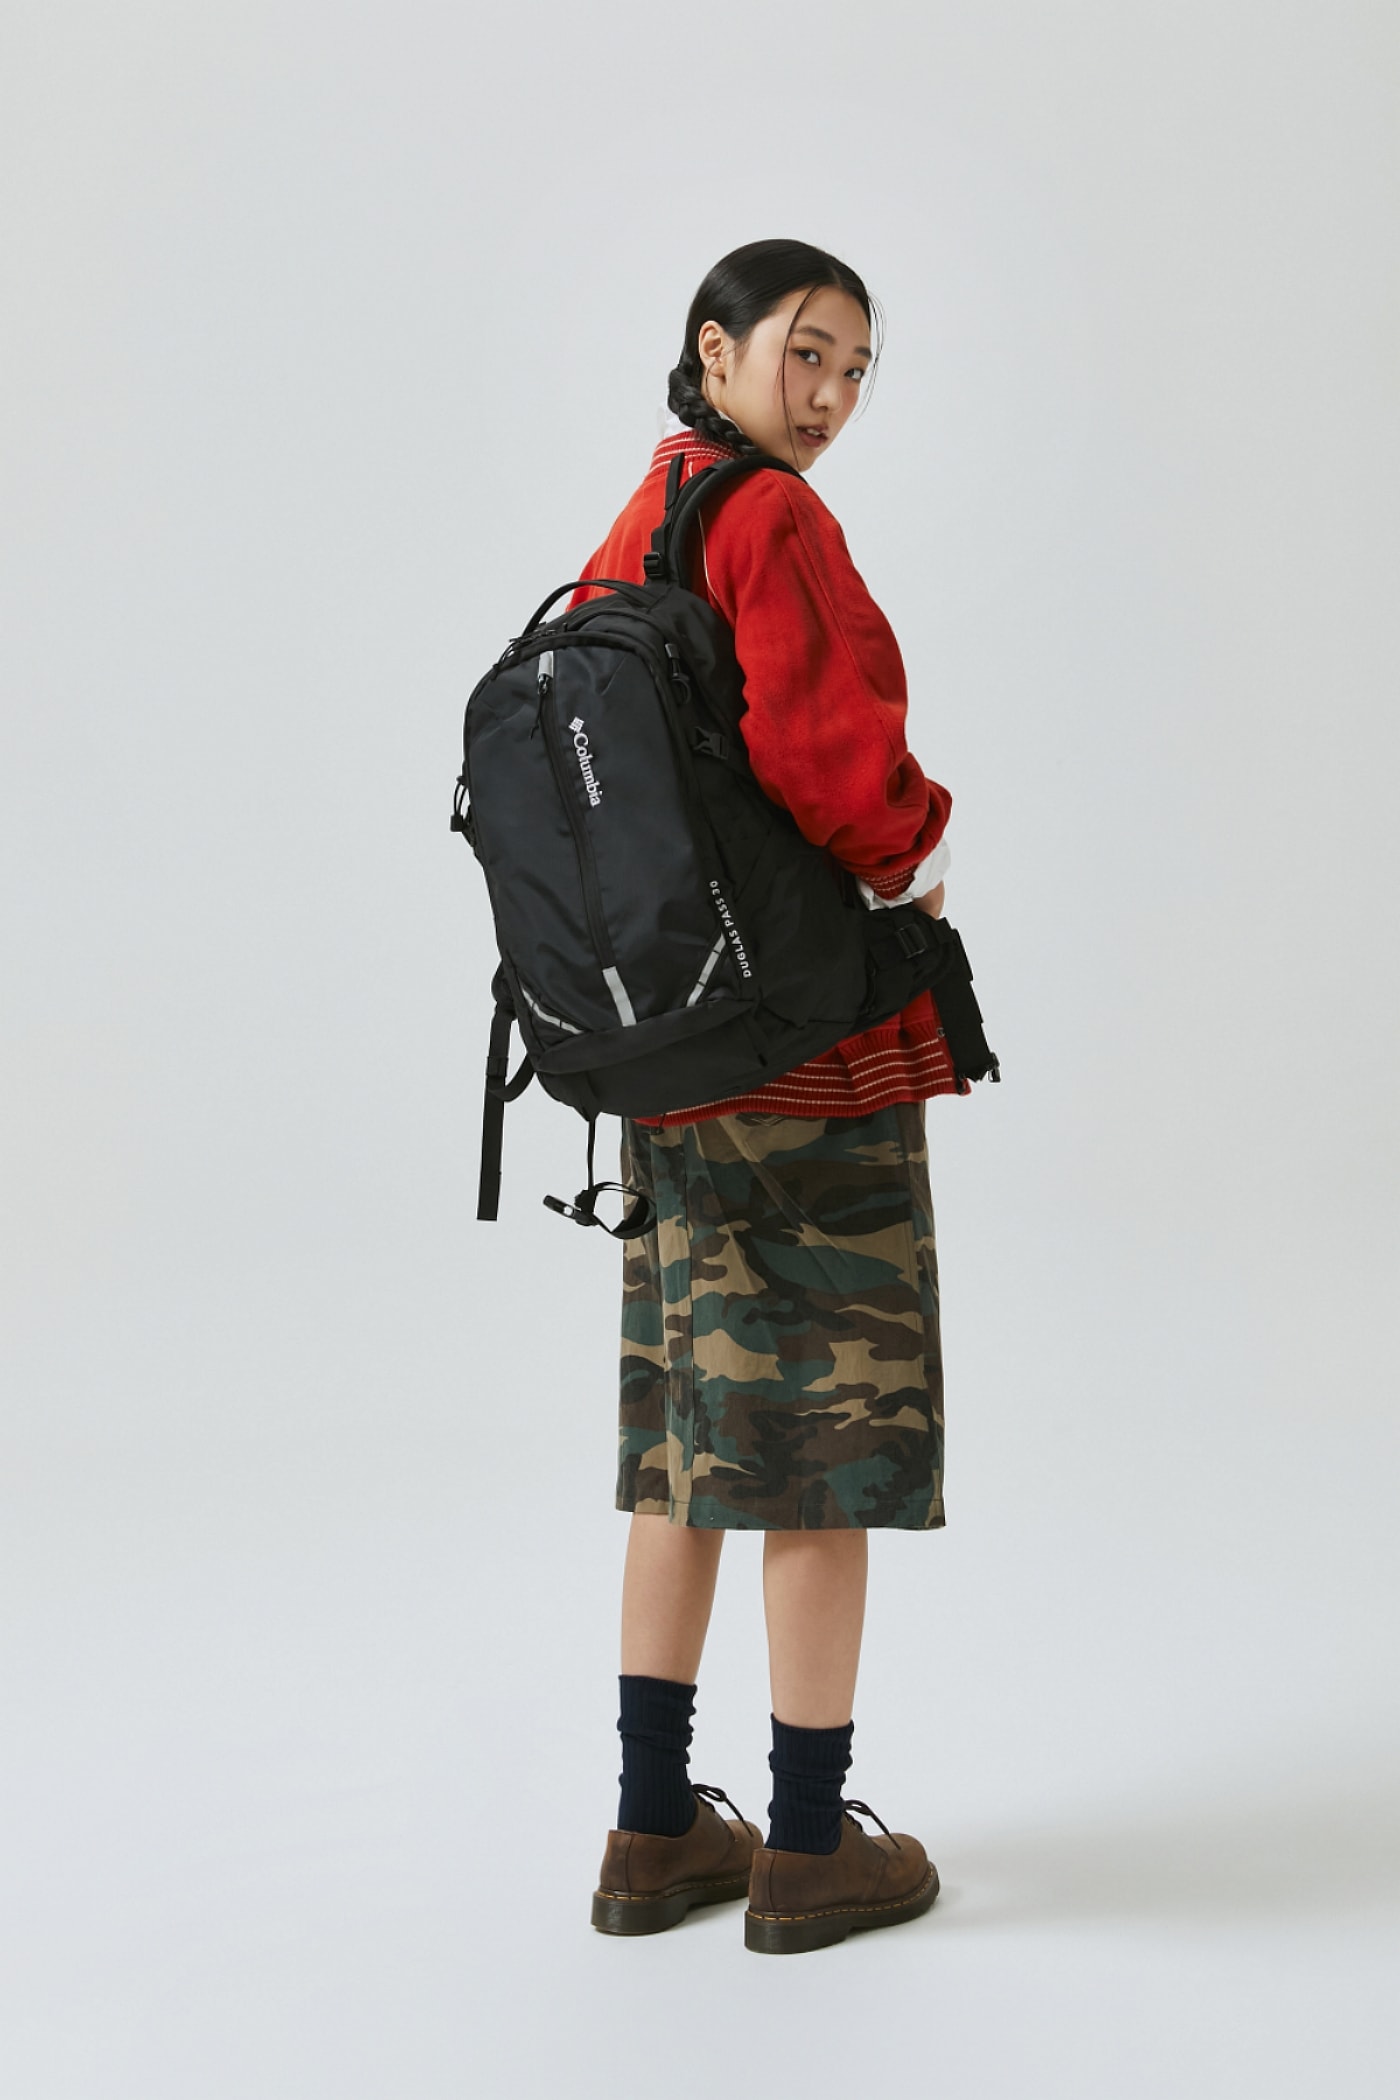 컬럼비아 더글라스 패스 백팩 출시 columbia sportswear douglass pass backpack redwood 